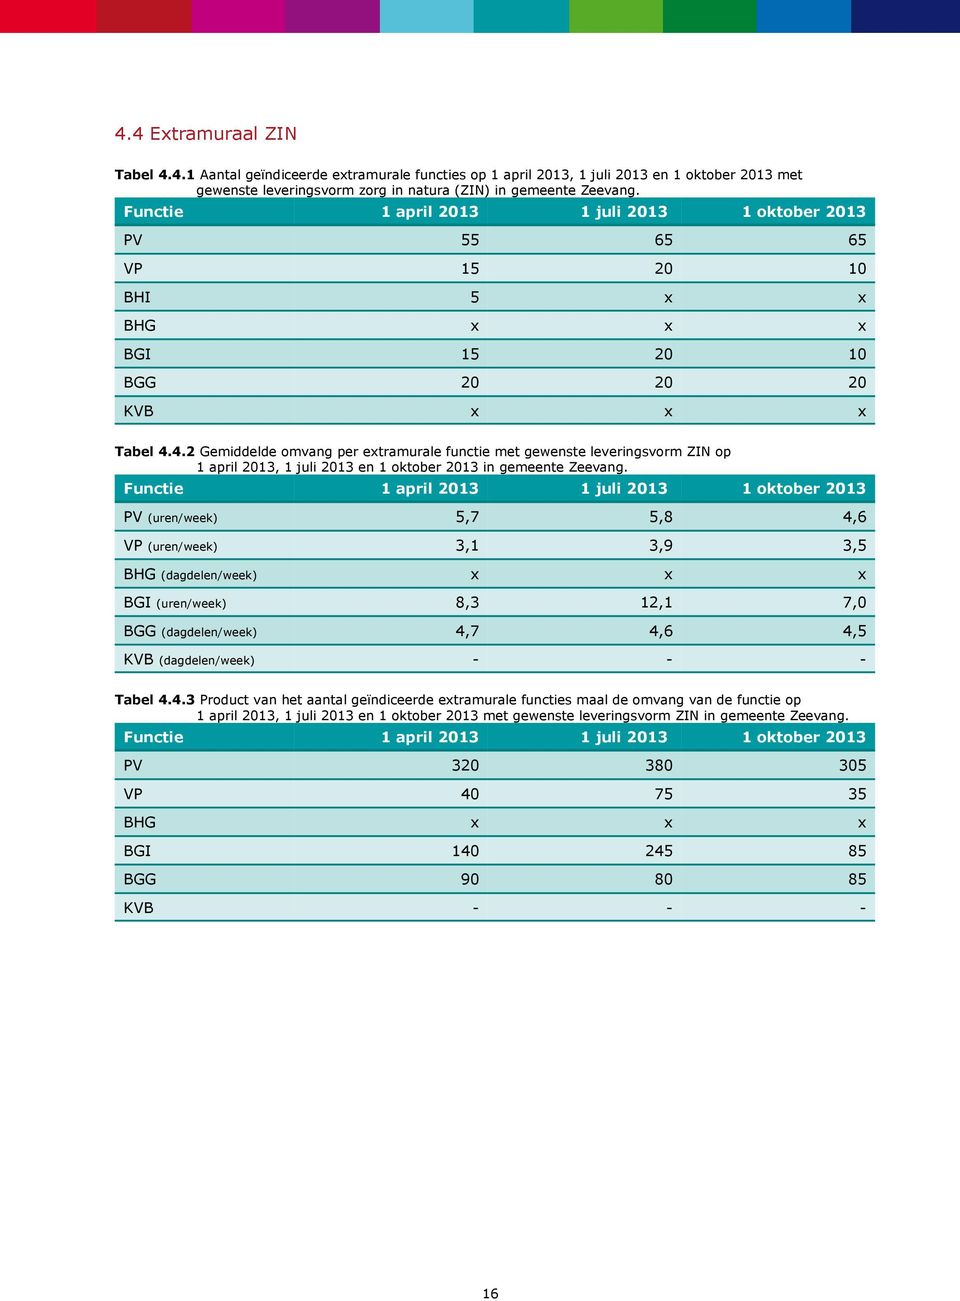 4.2 Gemiddelde omvang per extramurale functie met gewenste leveringsvorm ZIN op 1 april 2013, 1 juli 2013 en 1 oktober 2013 in gemeente Zeevang.